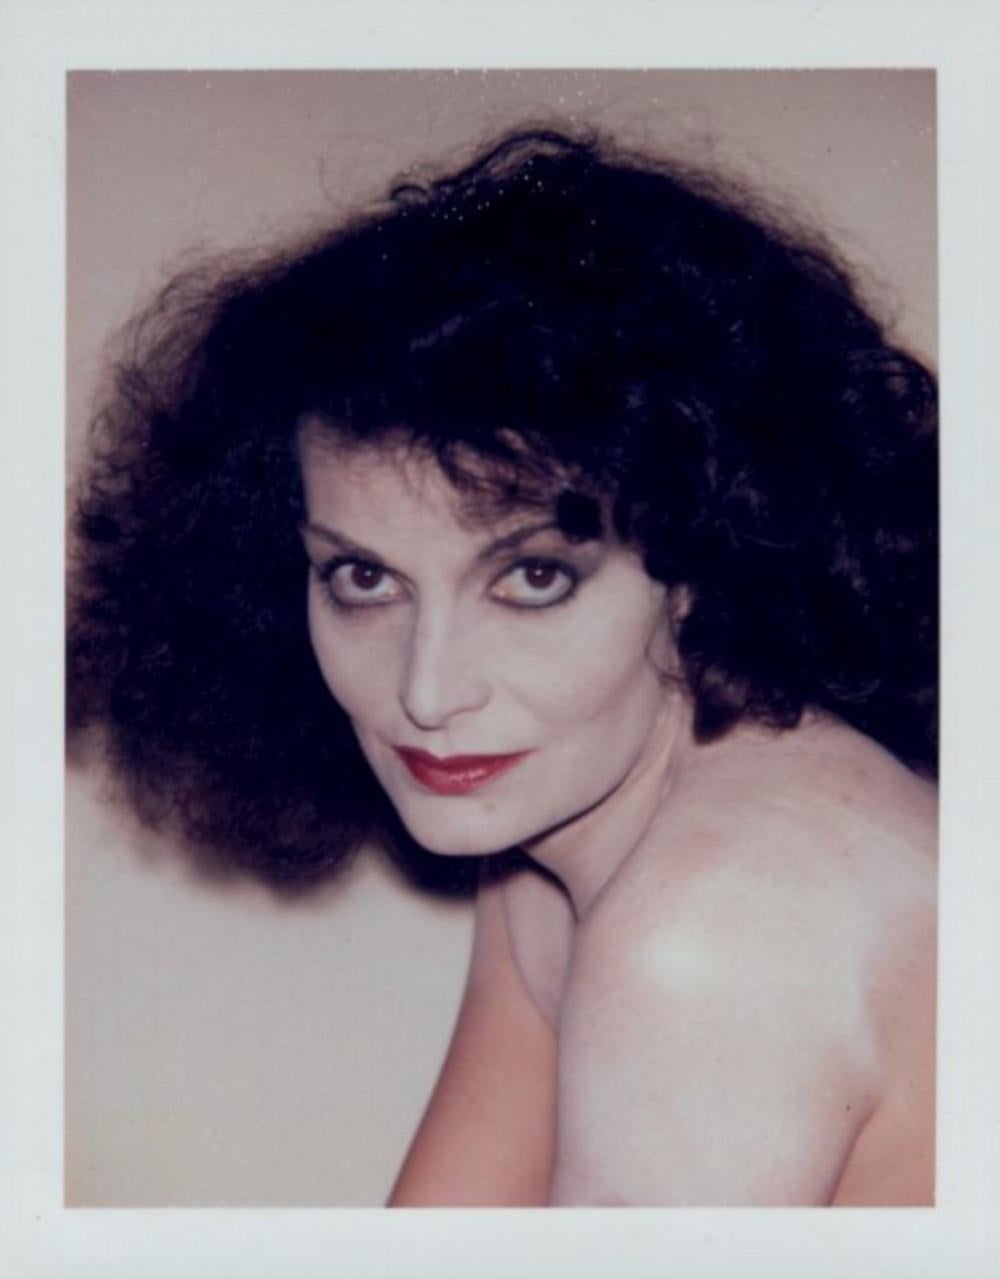 Andy Warhol Portrait Photograph – Von Furstenberg, Diane von Furstenberg